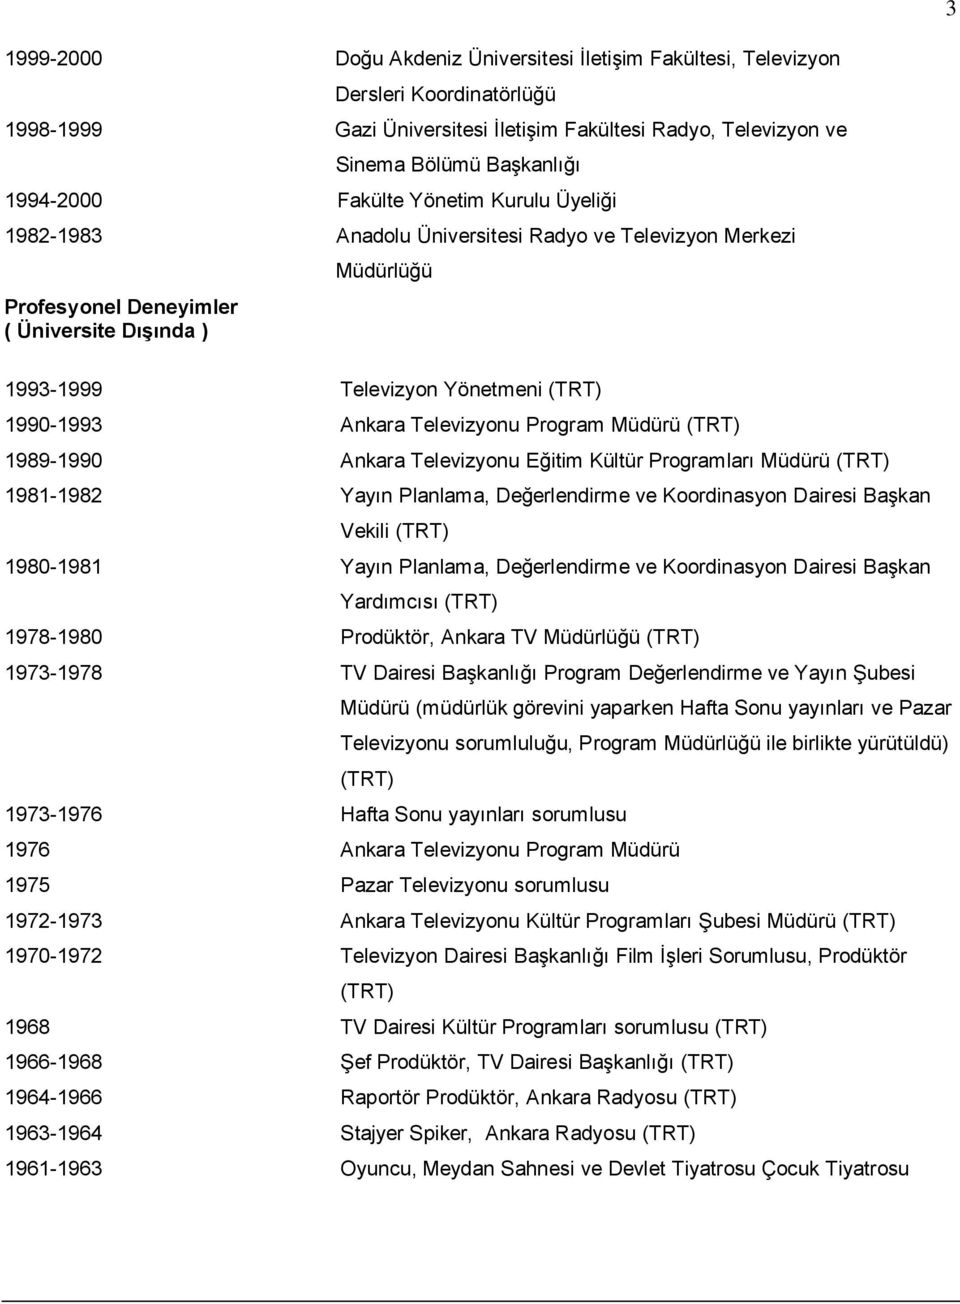 Televizyonu Program Müdürü (TRT) 1989-1990 Ankara Televizyonu Eğitim Kültür Programları Müdürü (TRT) 1981-1982 Yayın Planlama, Değerlendirme ve Koordinasyon Dairesi Başkan Vekili (TRT) 1980-1981